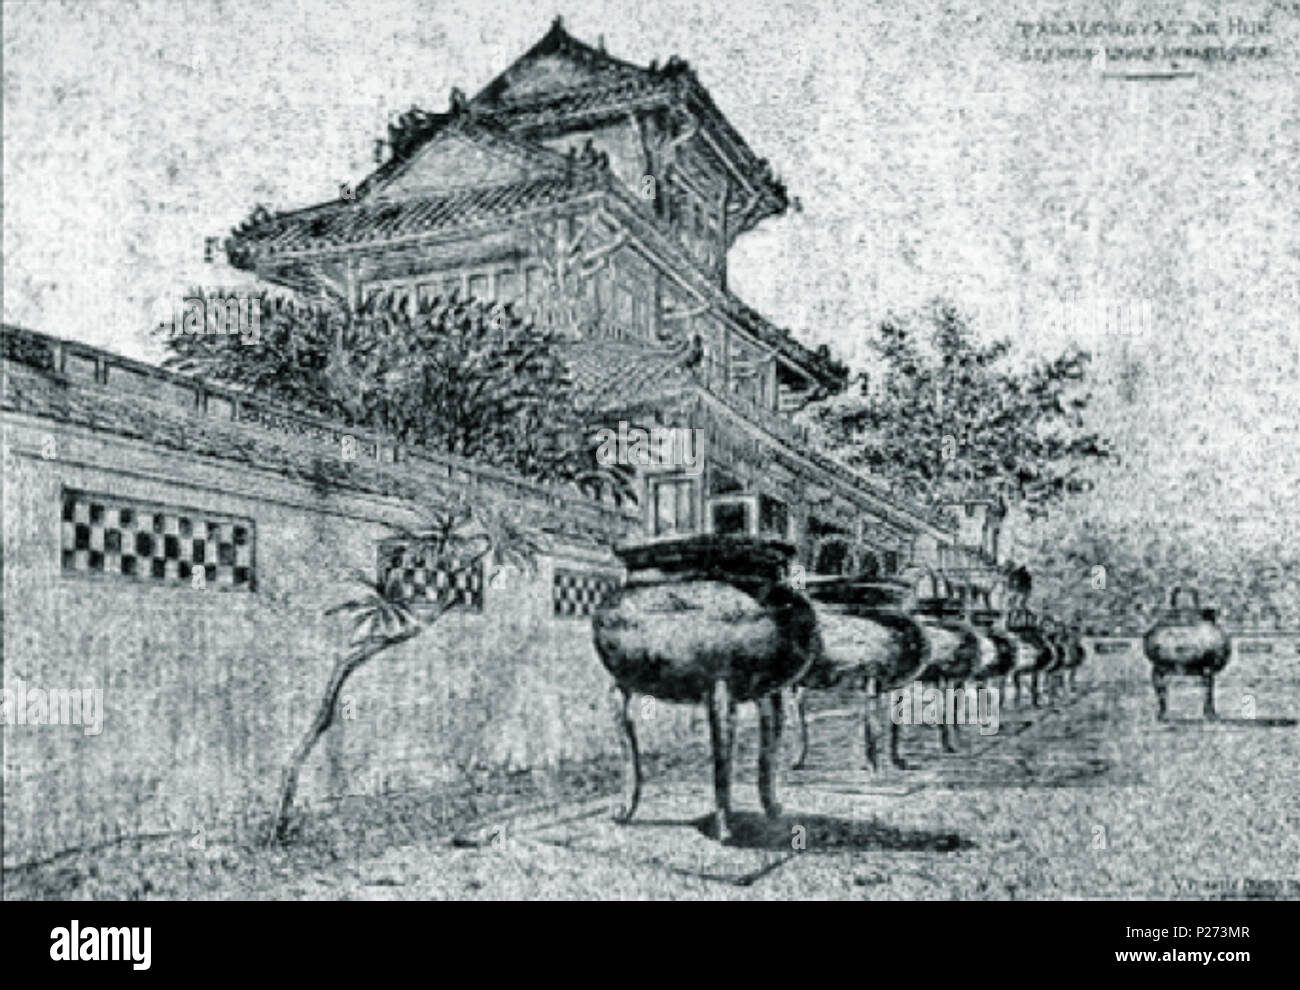 Khám phá bức bích họa về sông Hương dài nhất từ trước đến nay